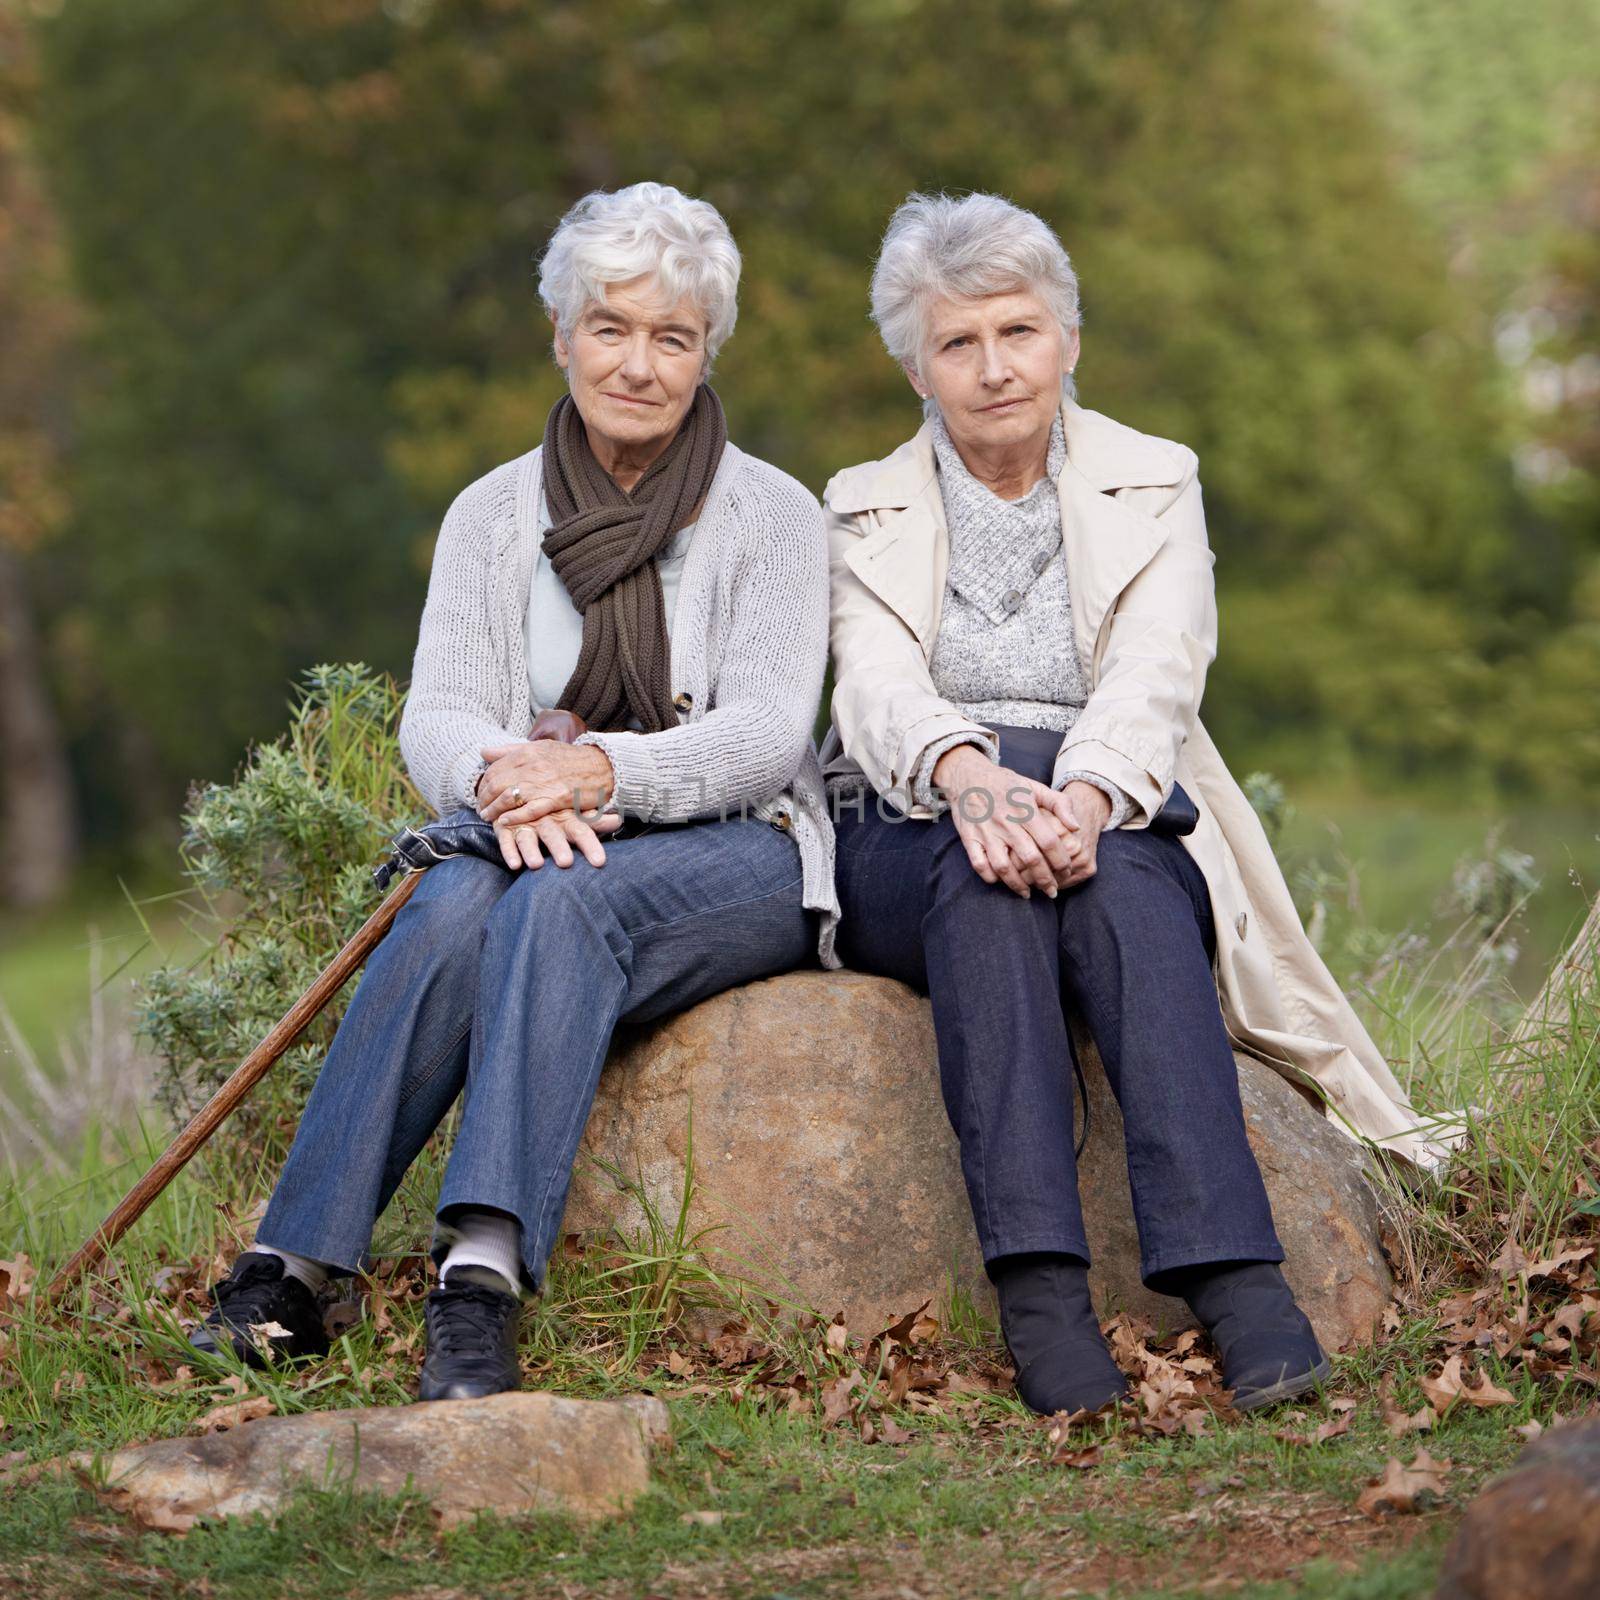 Taking life seriously. Two serious senior women sitting outdoors